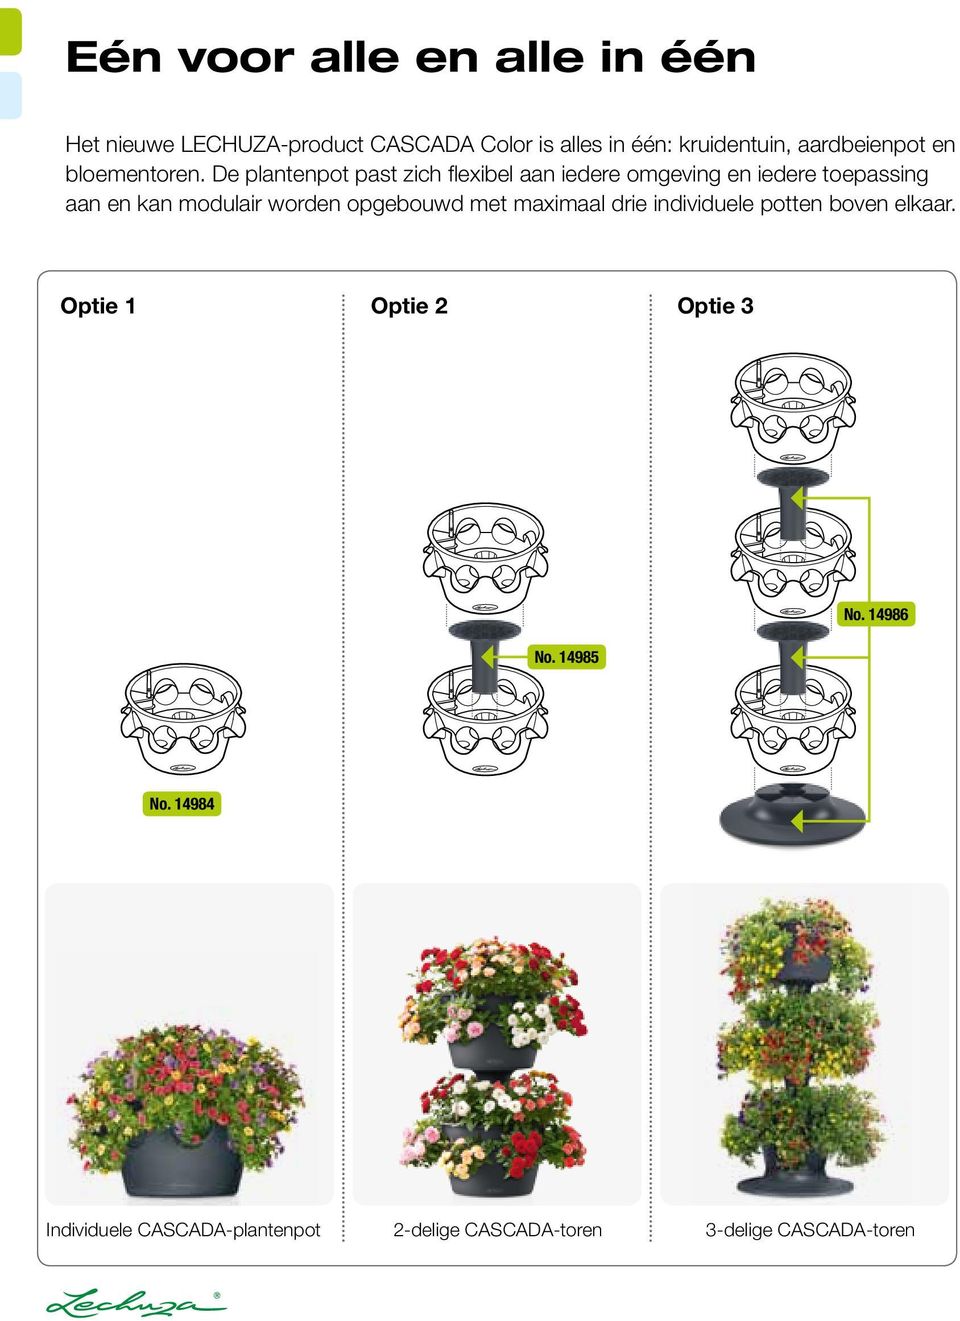 De plantenpot past zich flexibel aan iedere omgeving en iedere toepassing aan en kan modulair worden